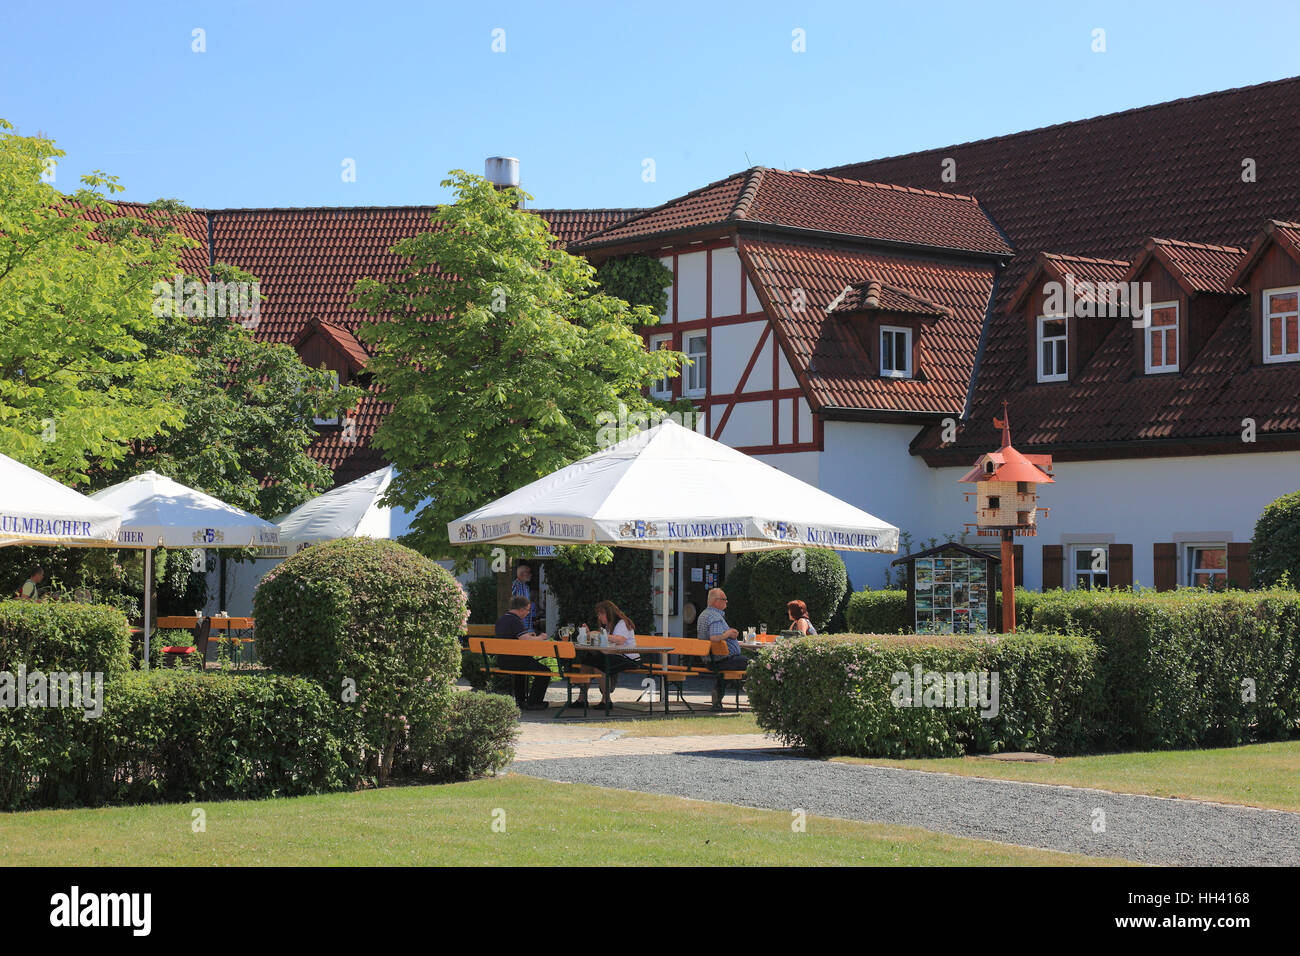 Jardin de bière de l'inn, Frankenfarm Himmelkron, district de Kulmbach, Haute-Franconie, Bavière, Allemagne Banque D'Images